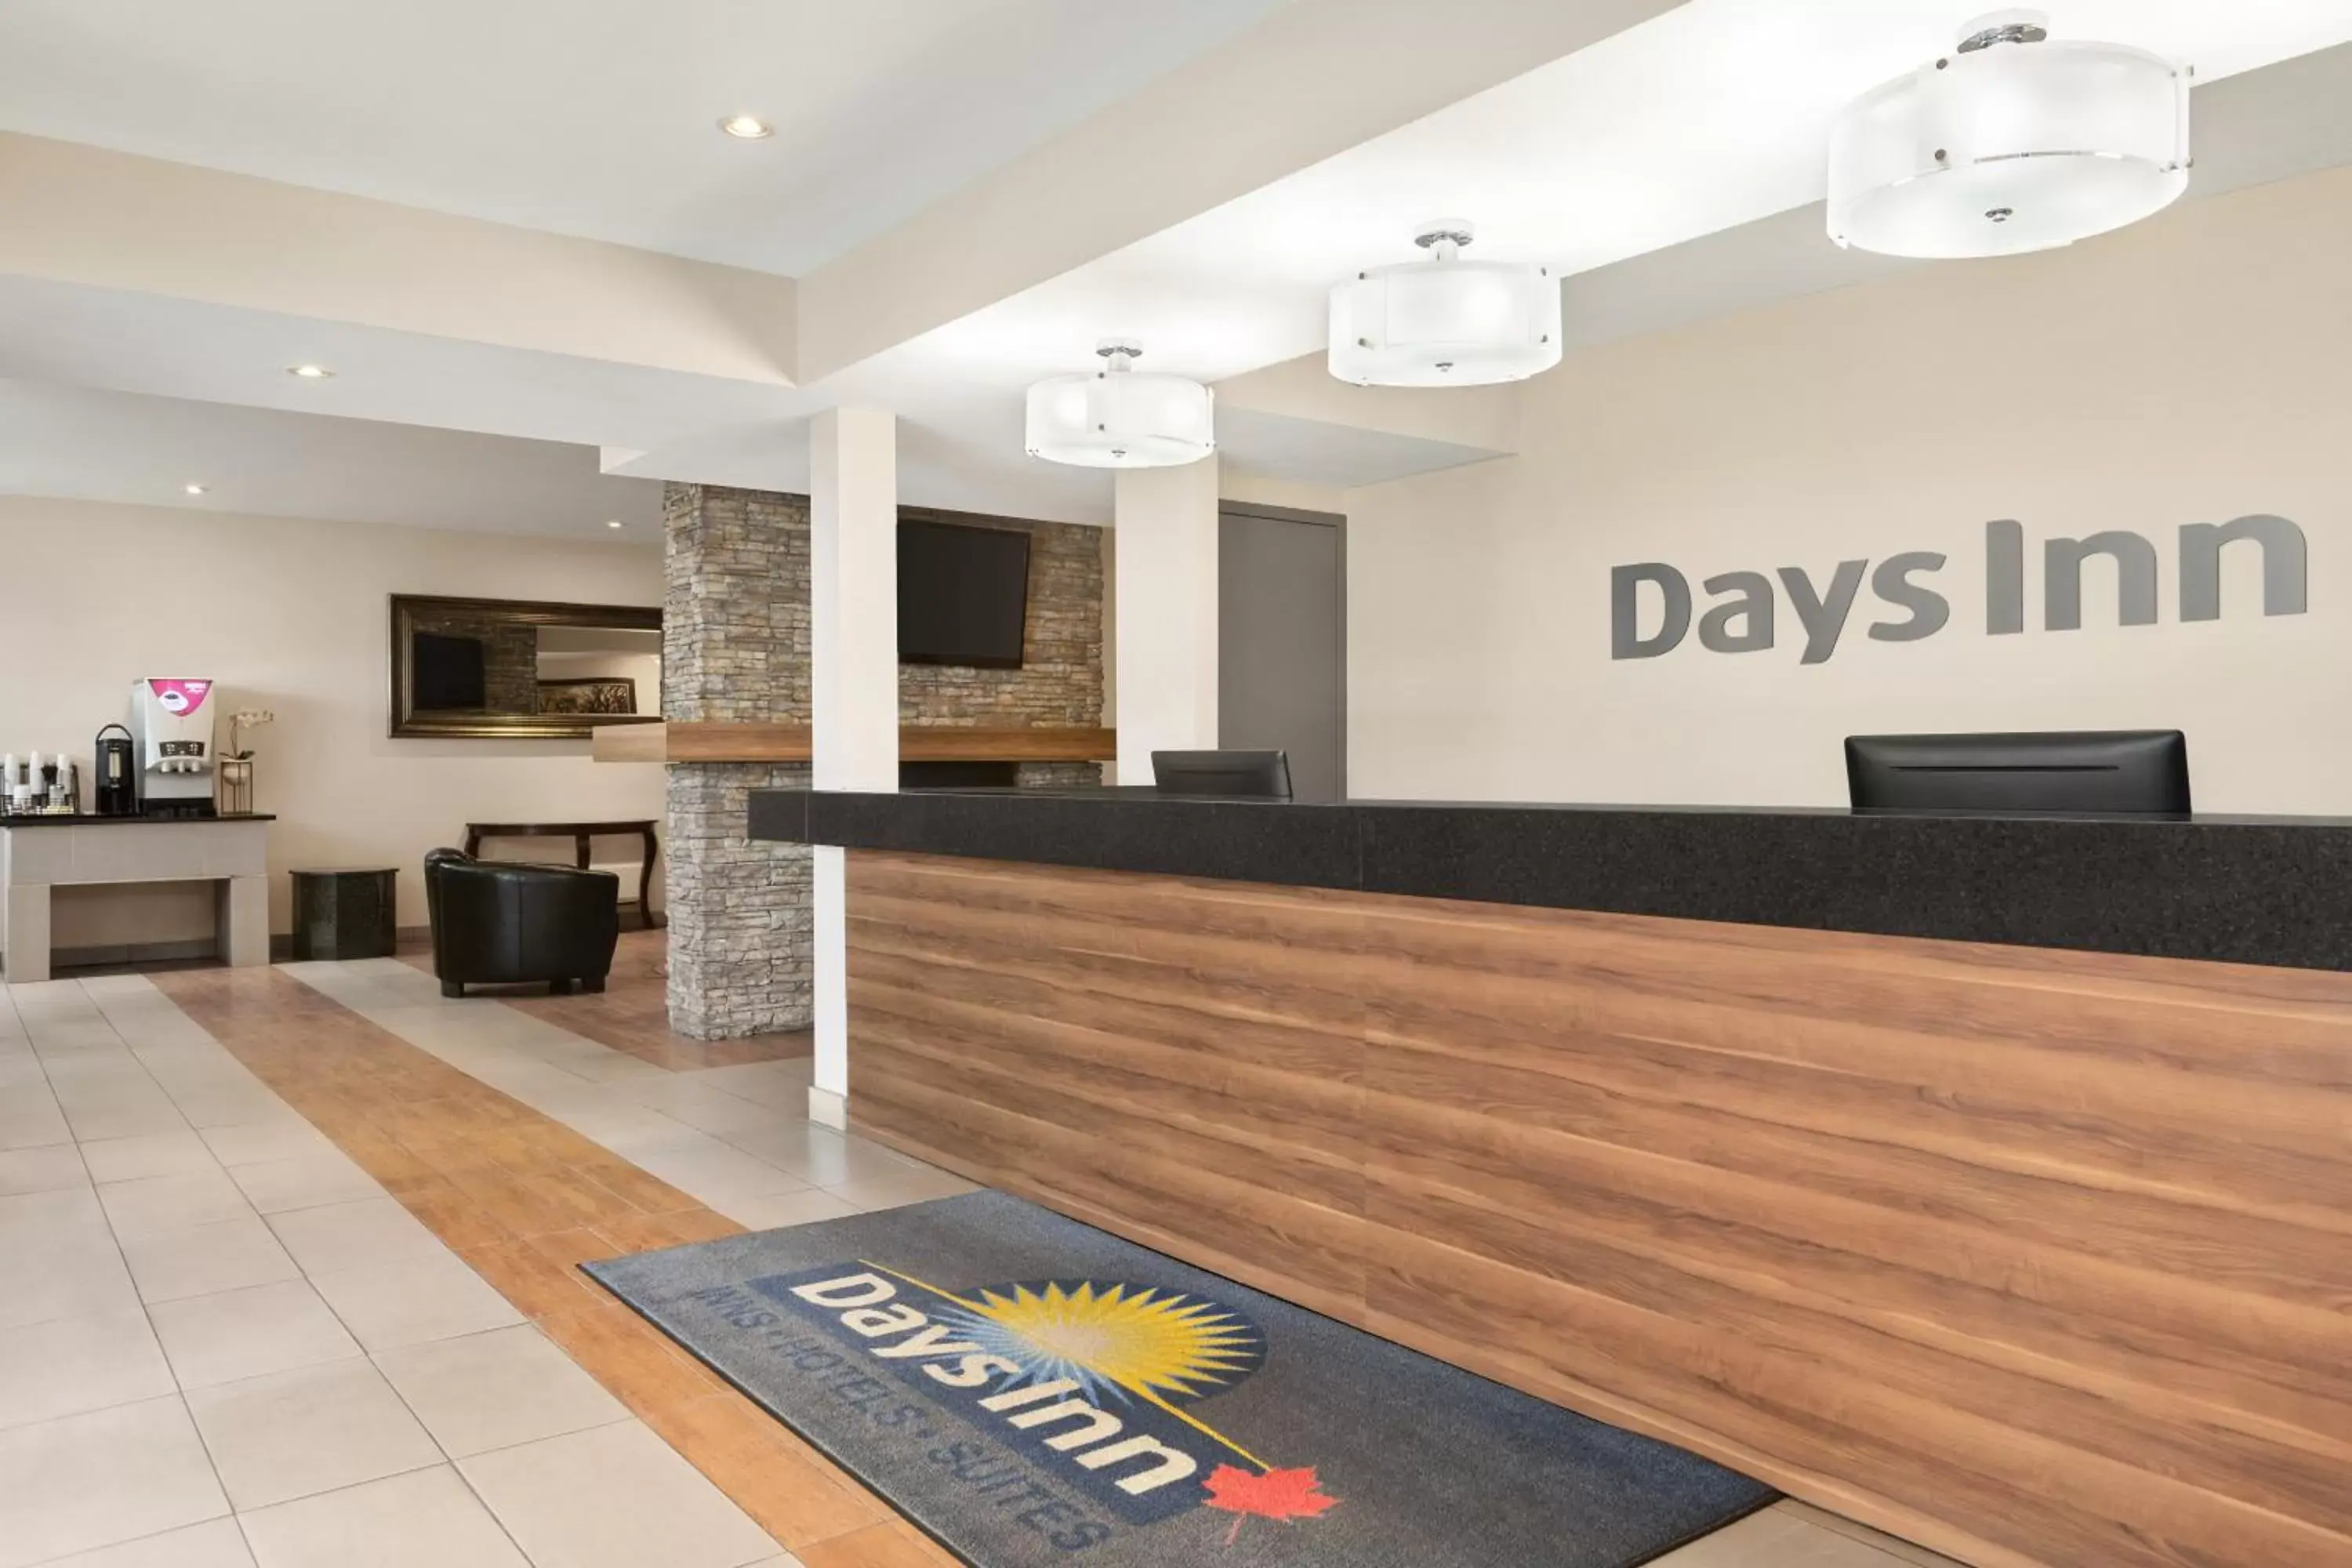 Lobby or reception, Lobby/Reception in Days Inn by Wyndham Montreal East